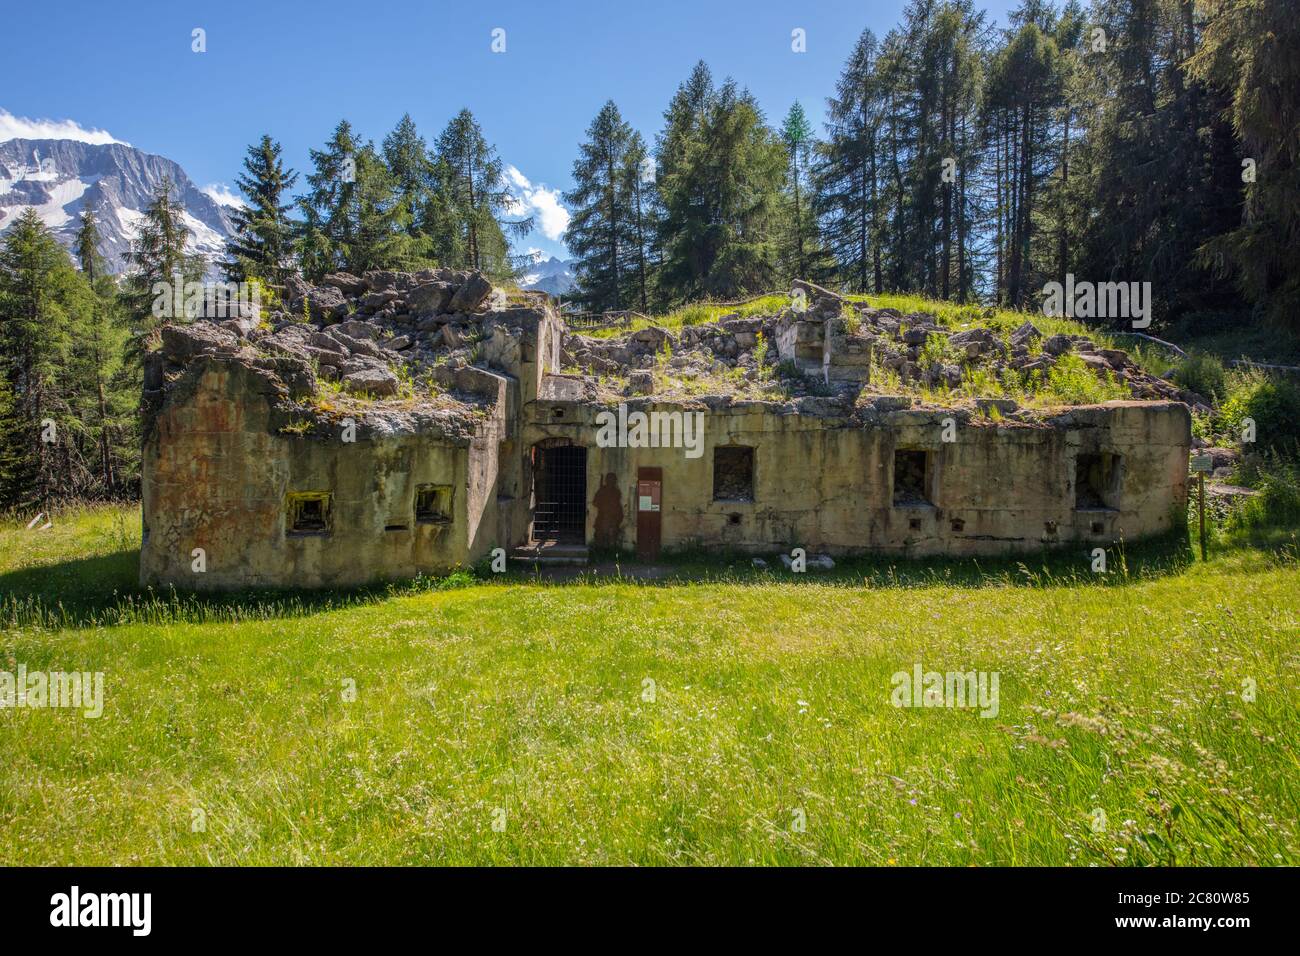 Eine schöne Festung in der Berglandschaft, Tonale Est, Trentino, Italien Stockfoto